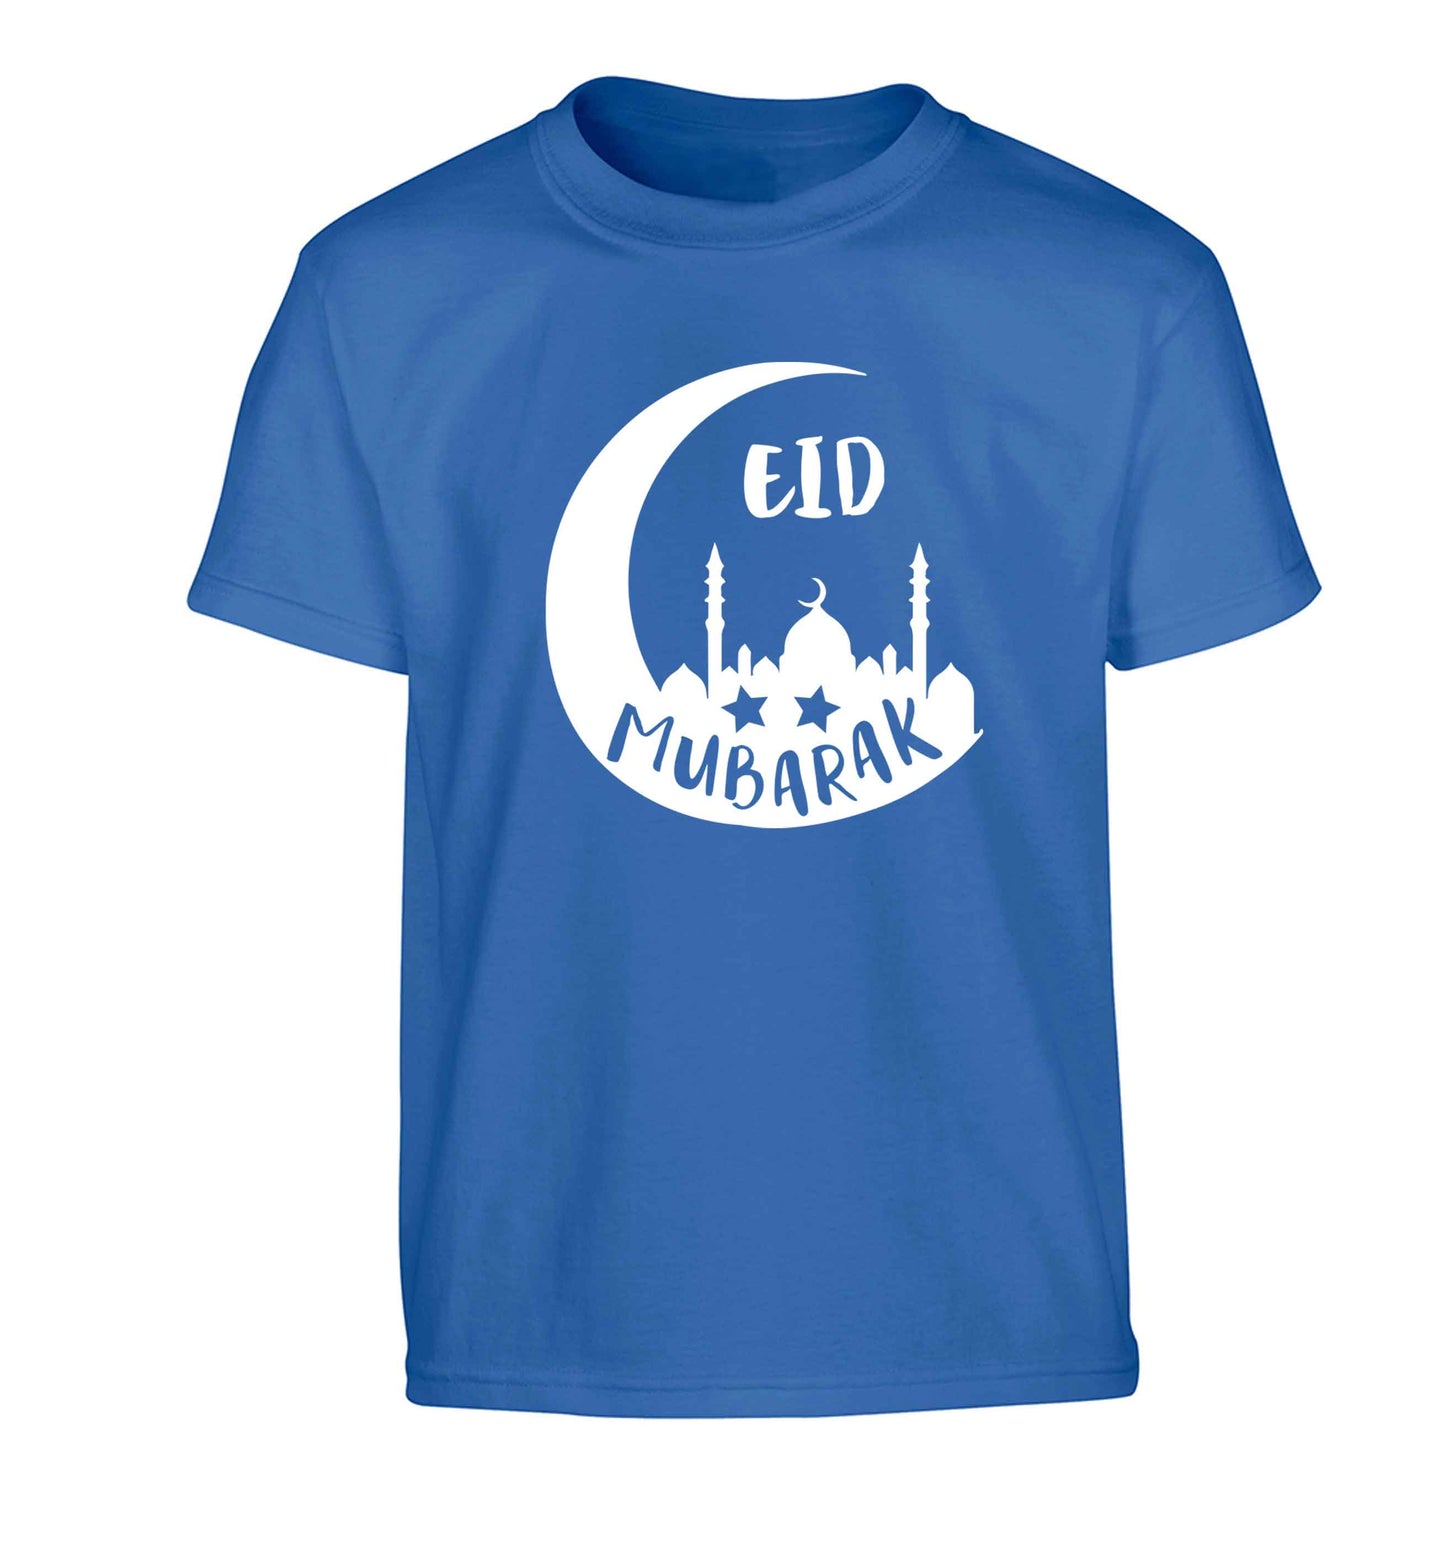 Eid mubarak Children's blue Tshirt 12-13 Years